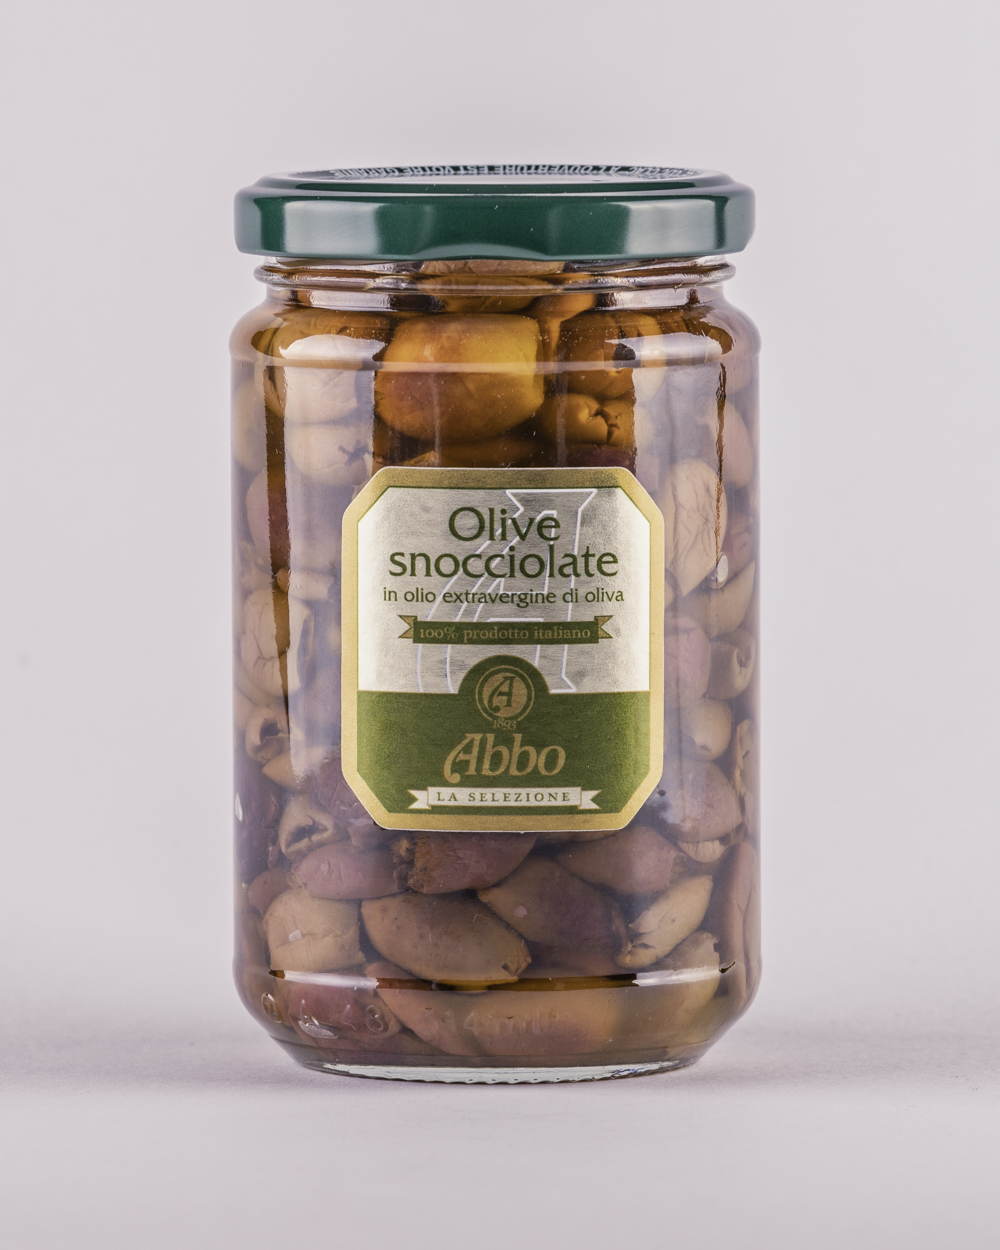 Confezione di olive snocciolate sottolio extravergine Abbo